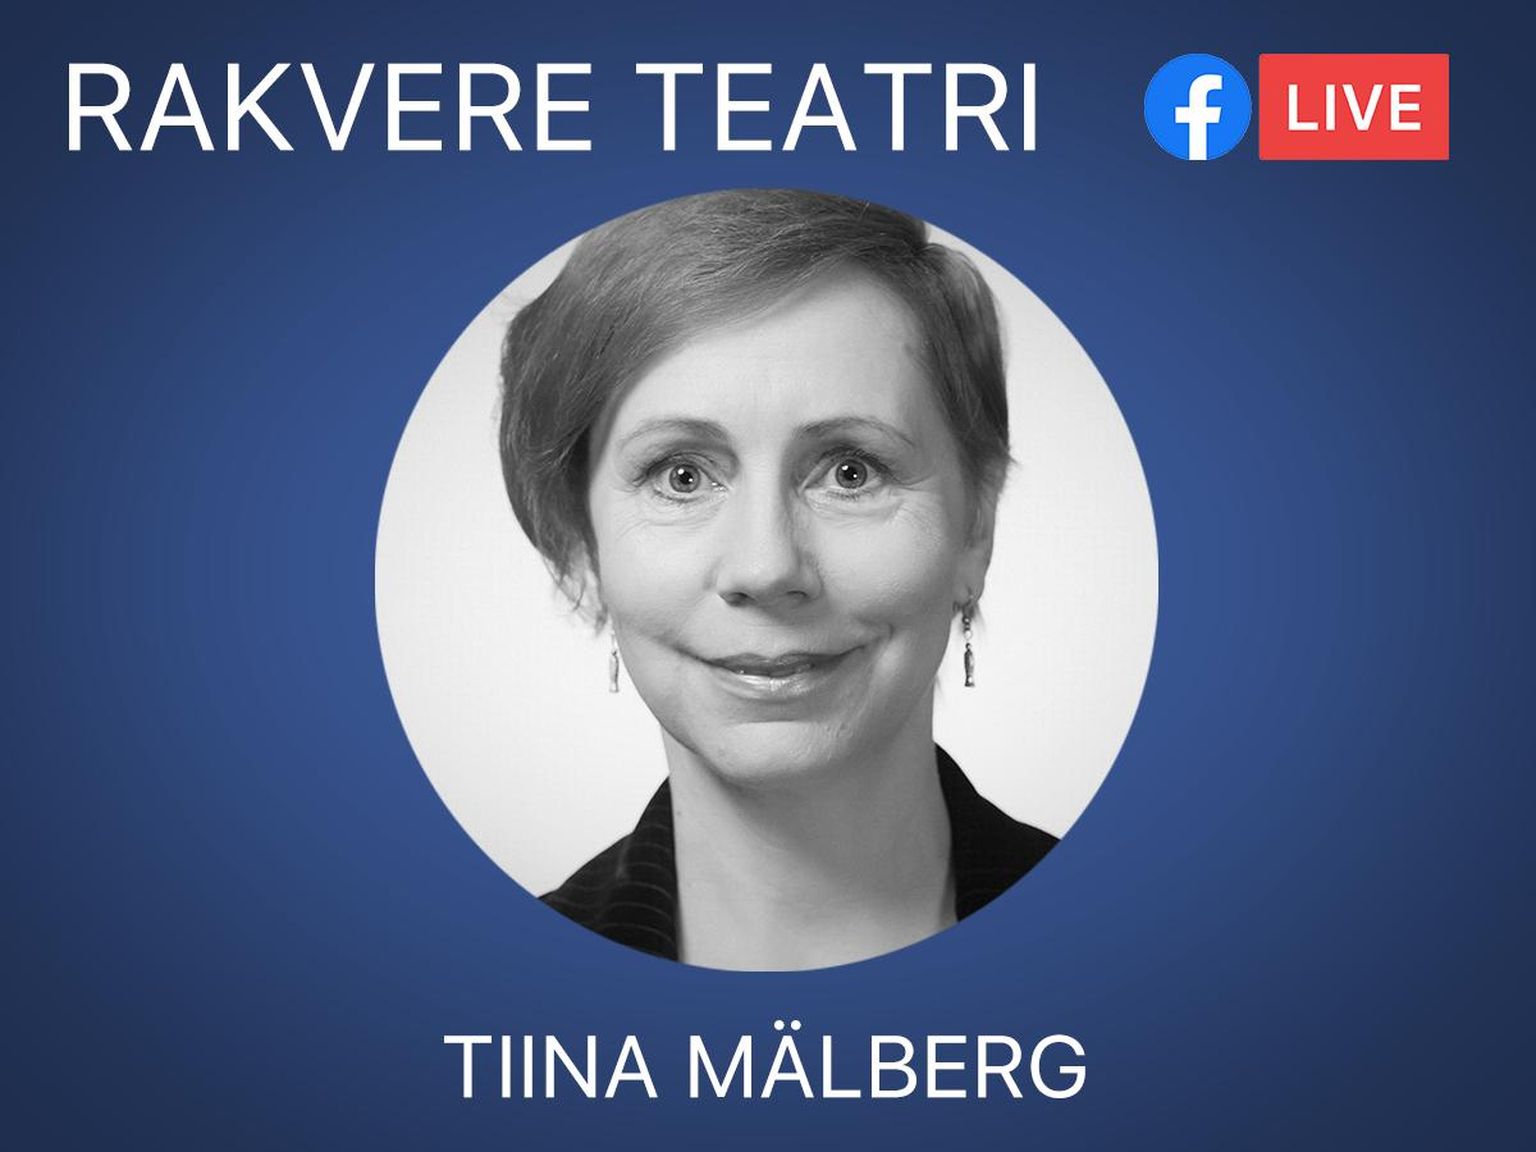 Tiina Mälberg arvab, et keerulisel kriisiajal on teatril eriti tähtis hoida sidet oma publikuga.